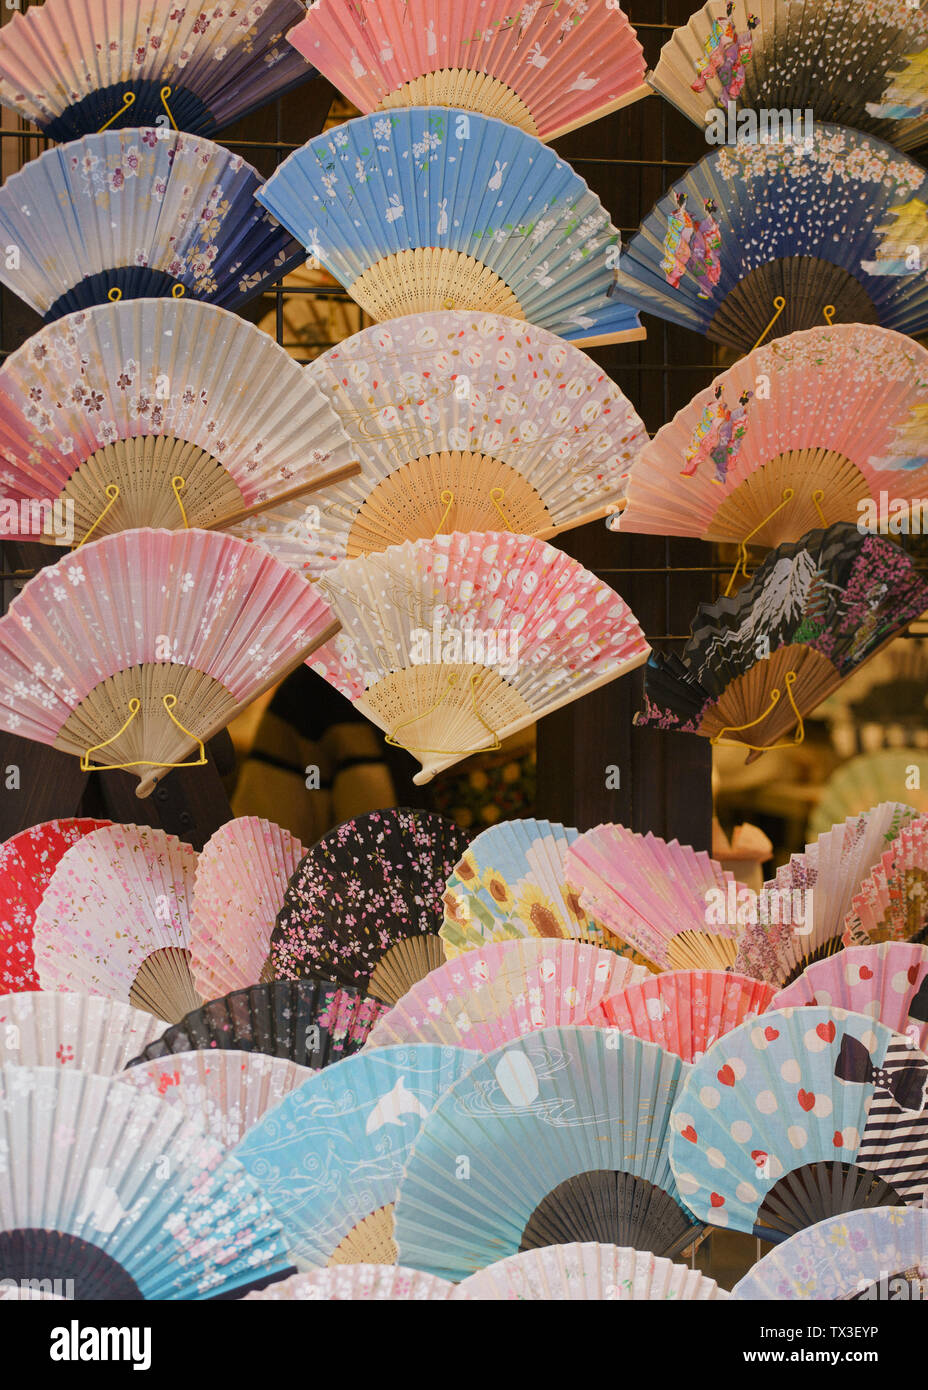 Varietà di ventole a mano sul display, Tokyo, Giappone Foto Stock